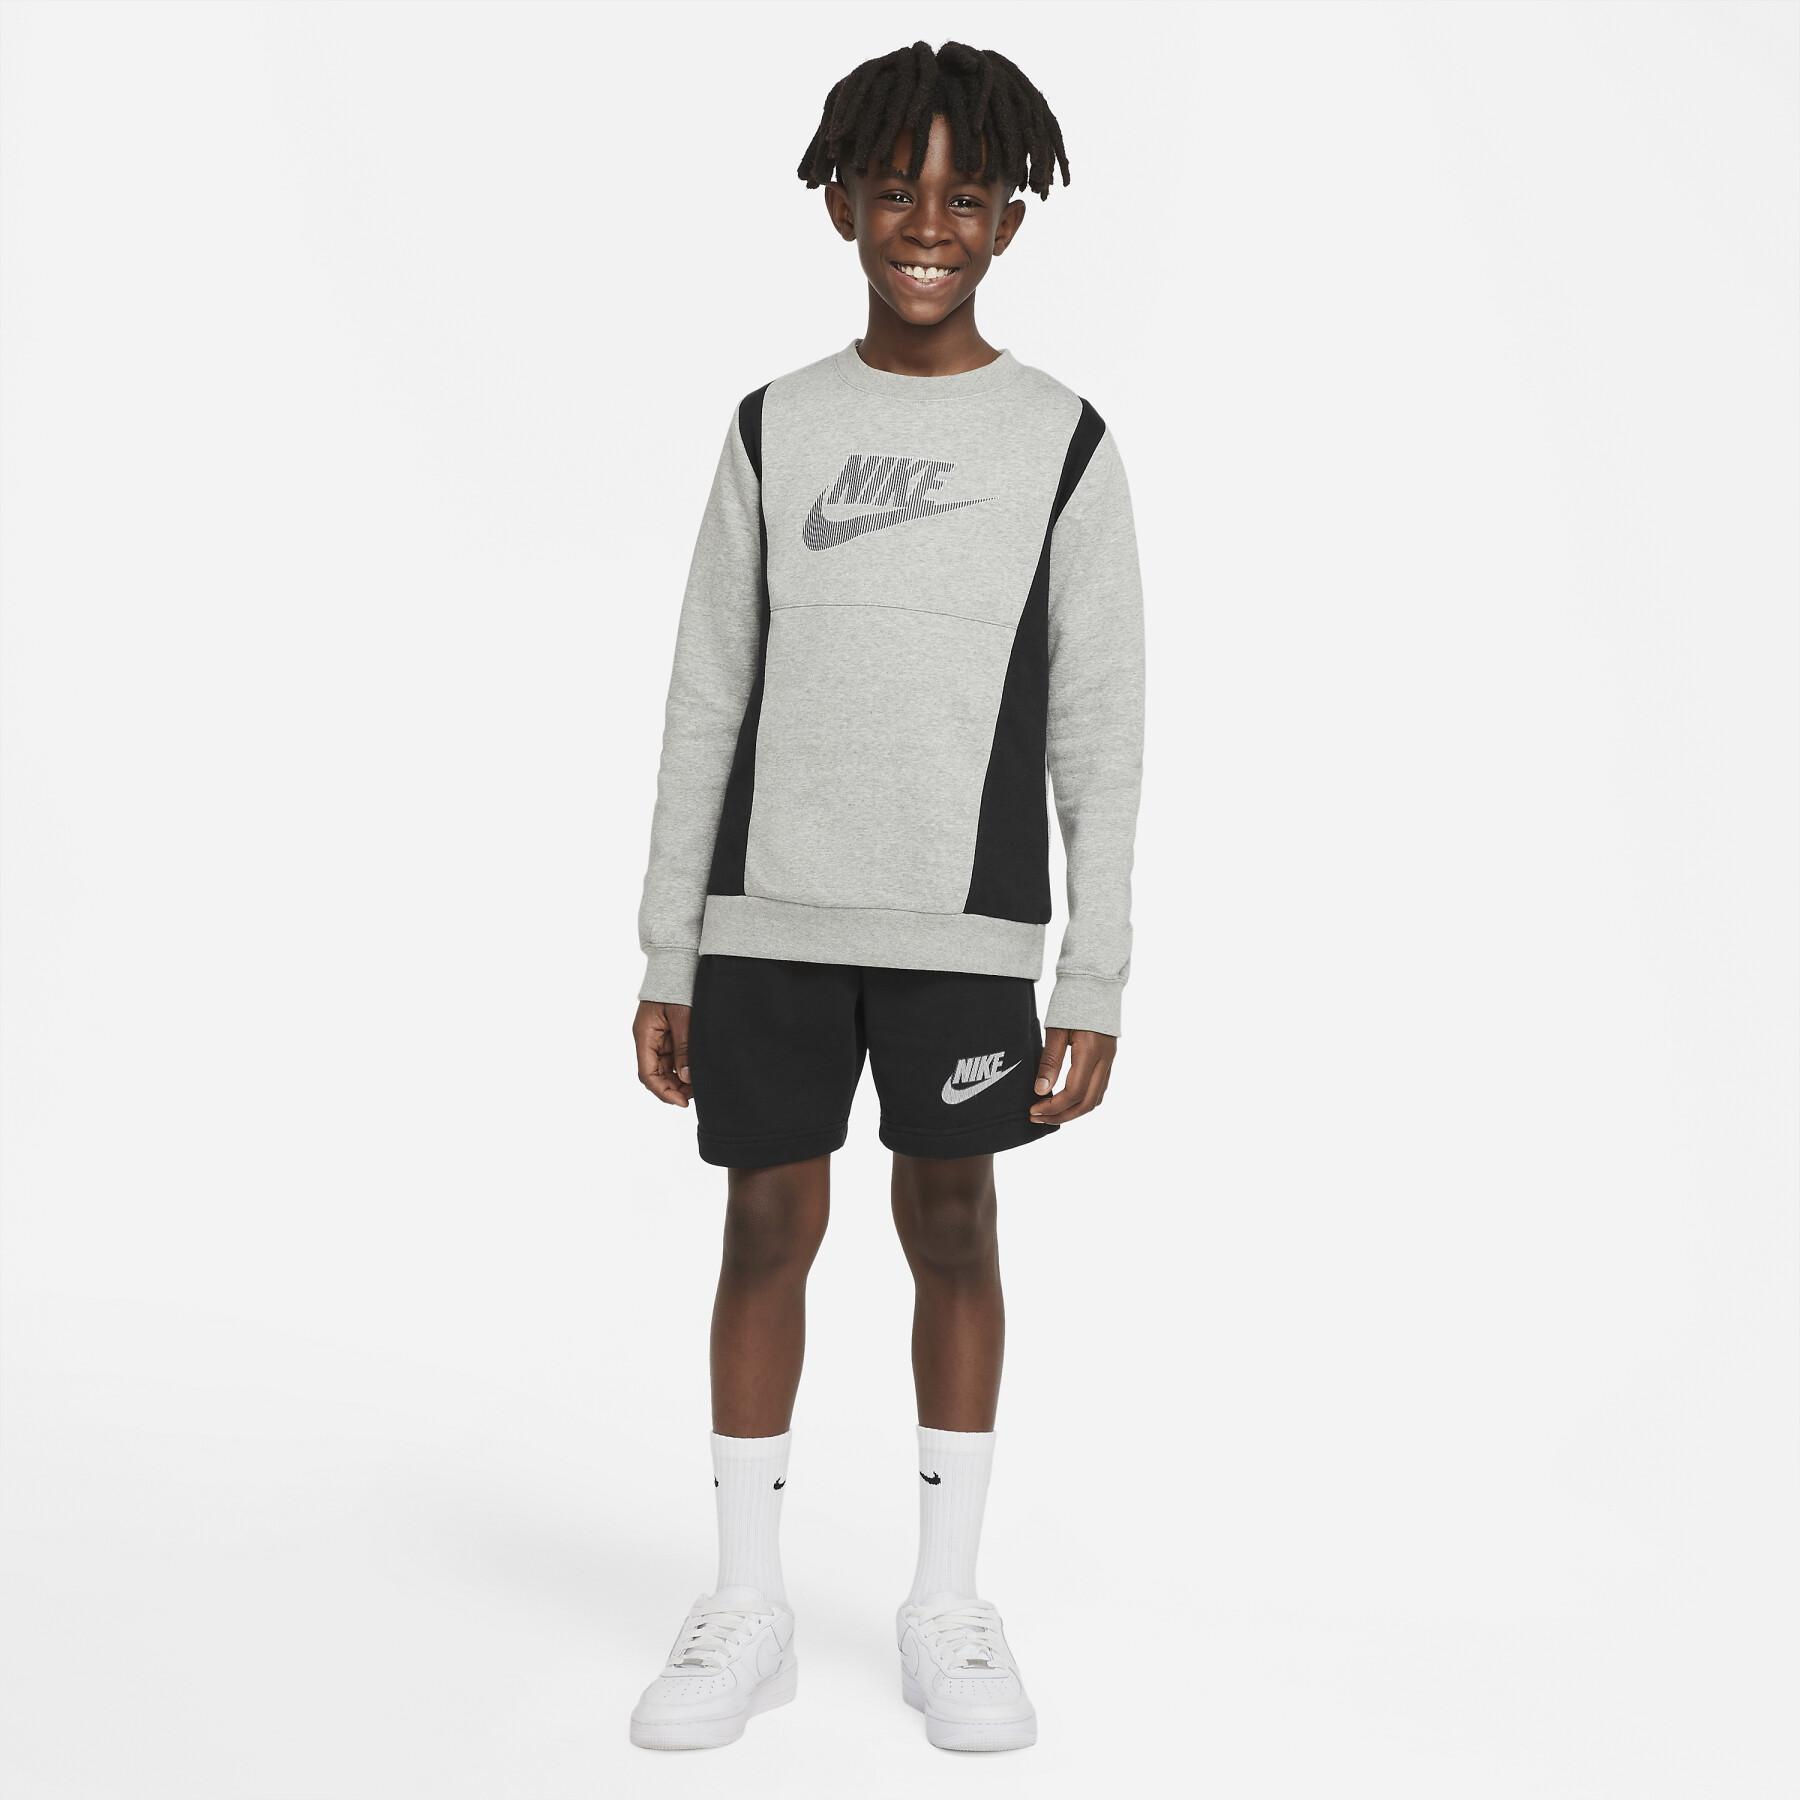 Pantaloncini per bambini Nike Hybrid